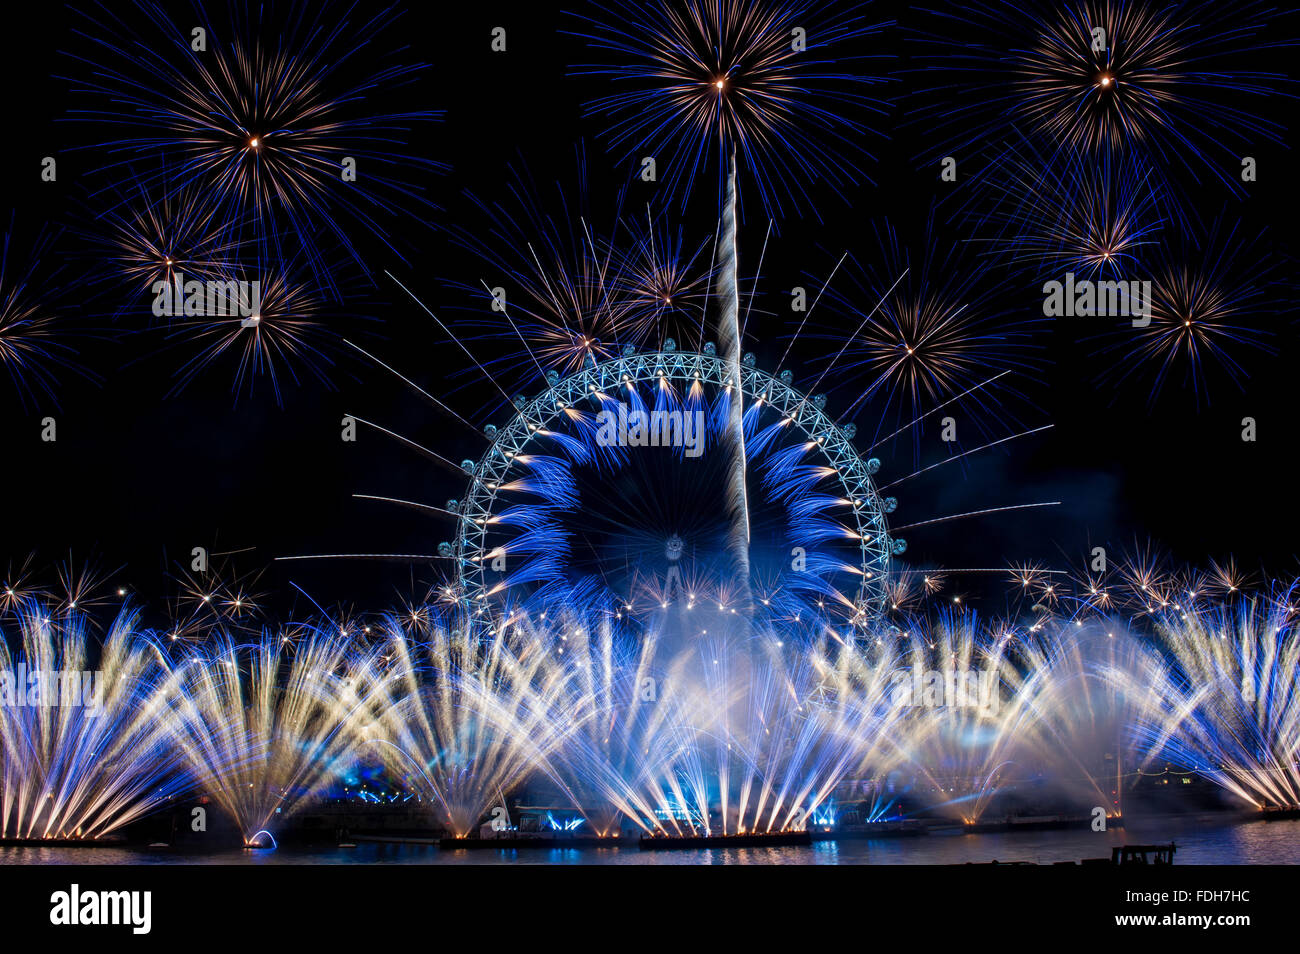 La nouvelle année de Londres 2016 Feu d'artifice au London Eye. Prises à partir de la statue de la RAF sur la rive nord de la Tamise. Comprend : Voir Où : London, Royaume-Uni Quand : 31 déc 2015 Banque D'Images